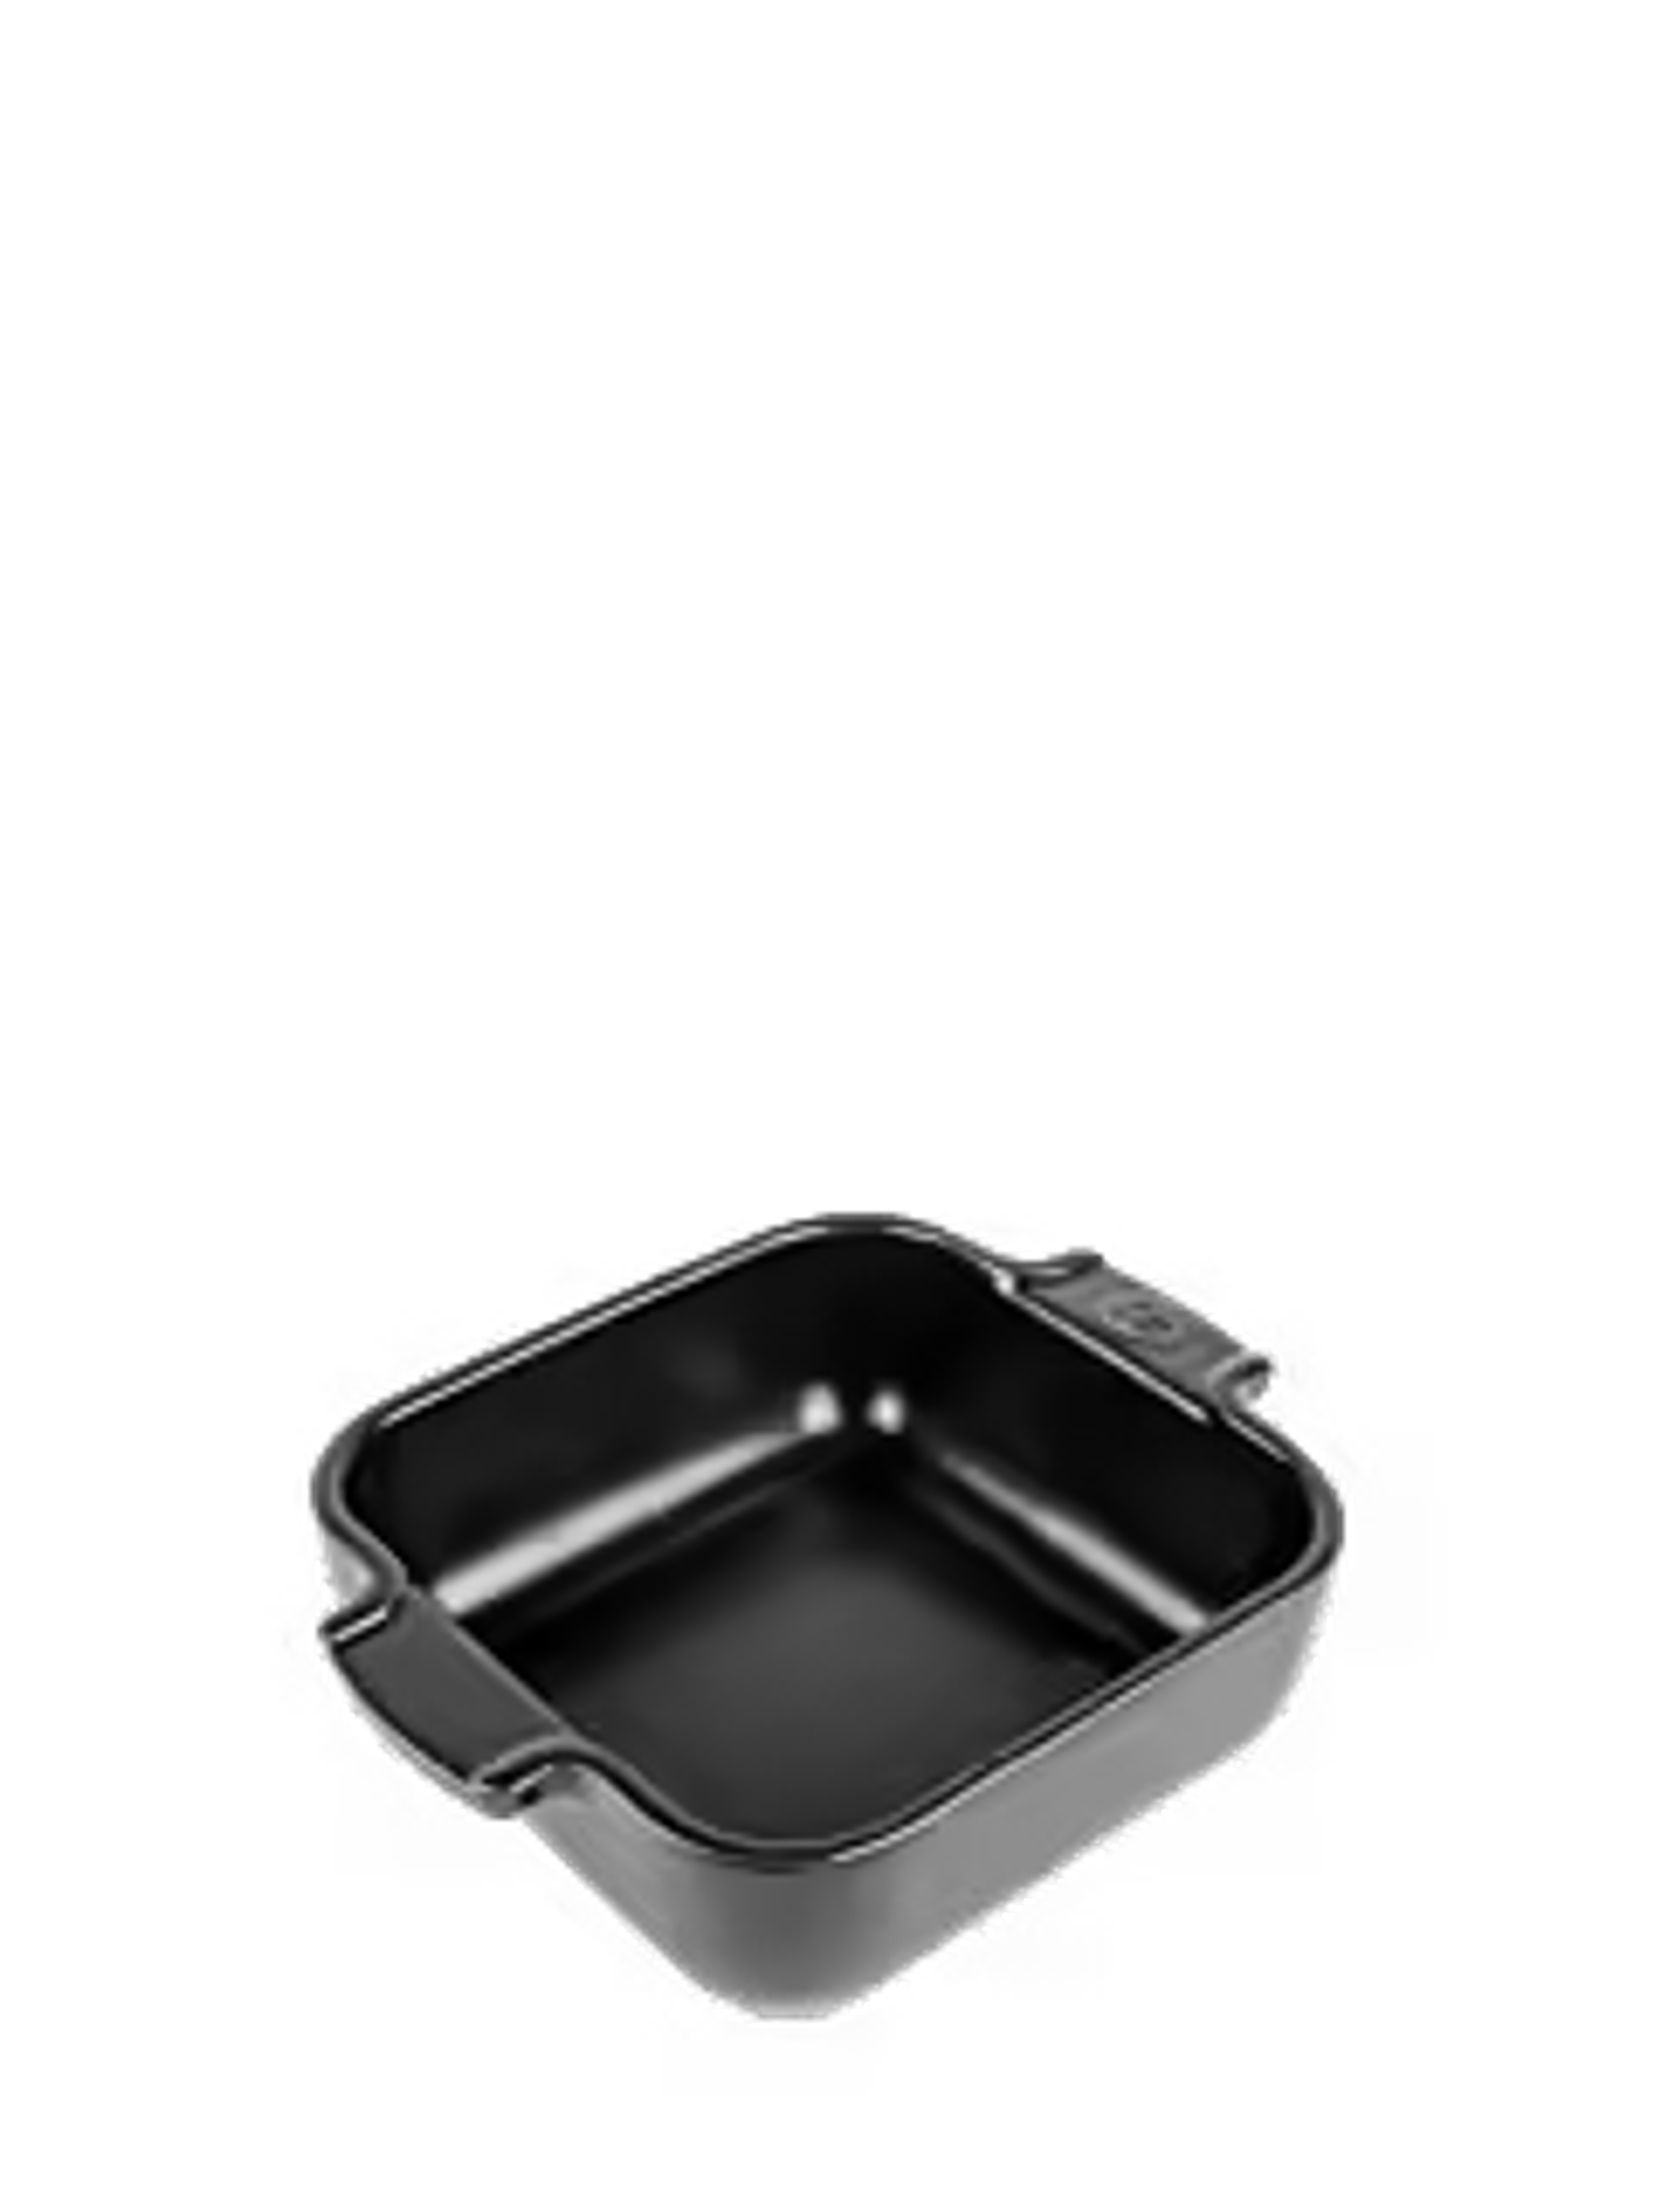 Appolia Individual square ceramic oven dish, satin black, 18 cm - 7" - Peugeot Saveurs